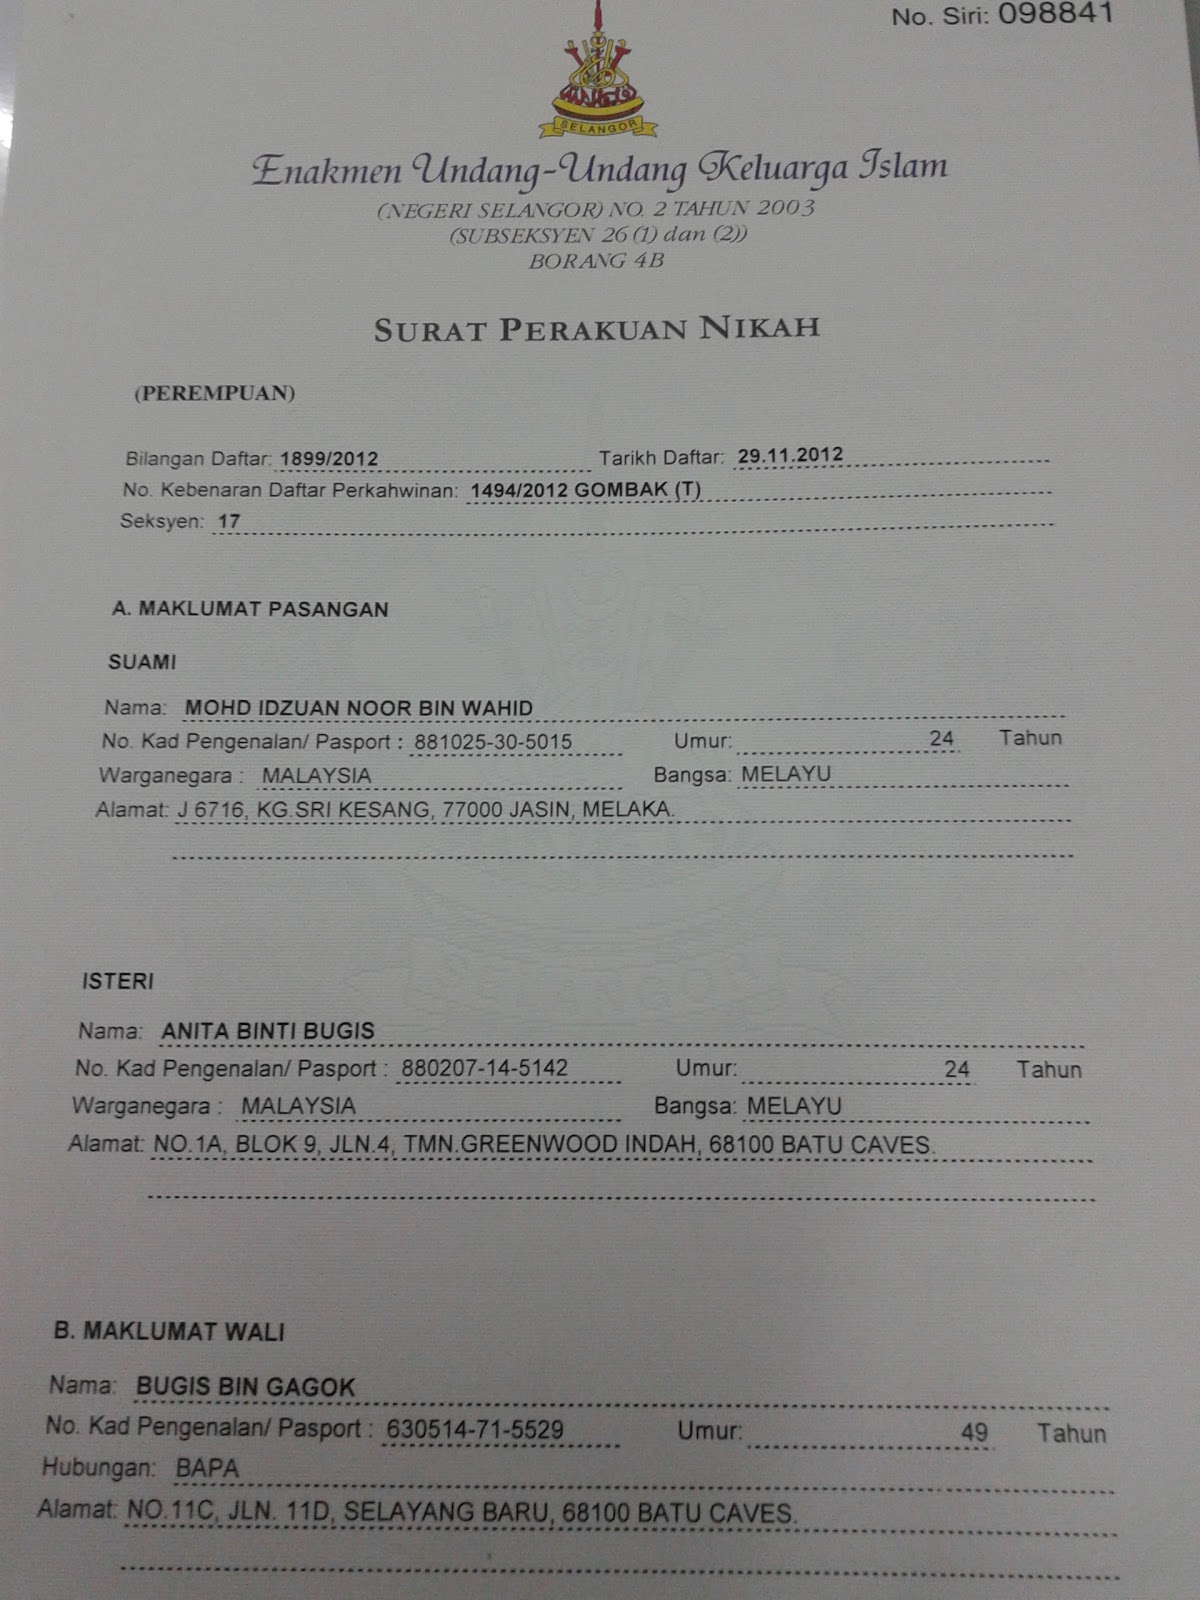 Atas Surat Perakuan Nikah Selangor